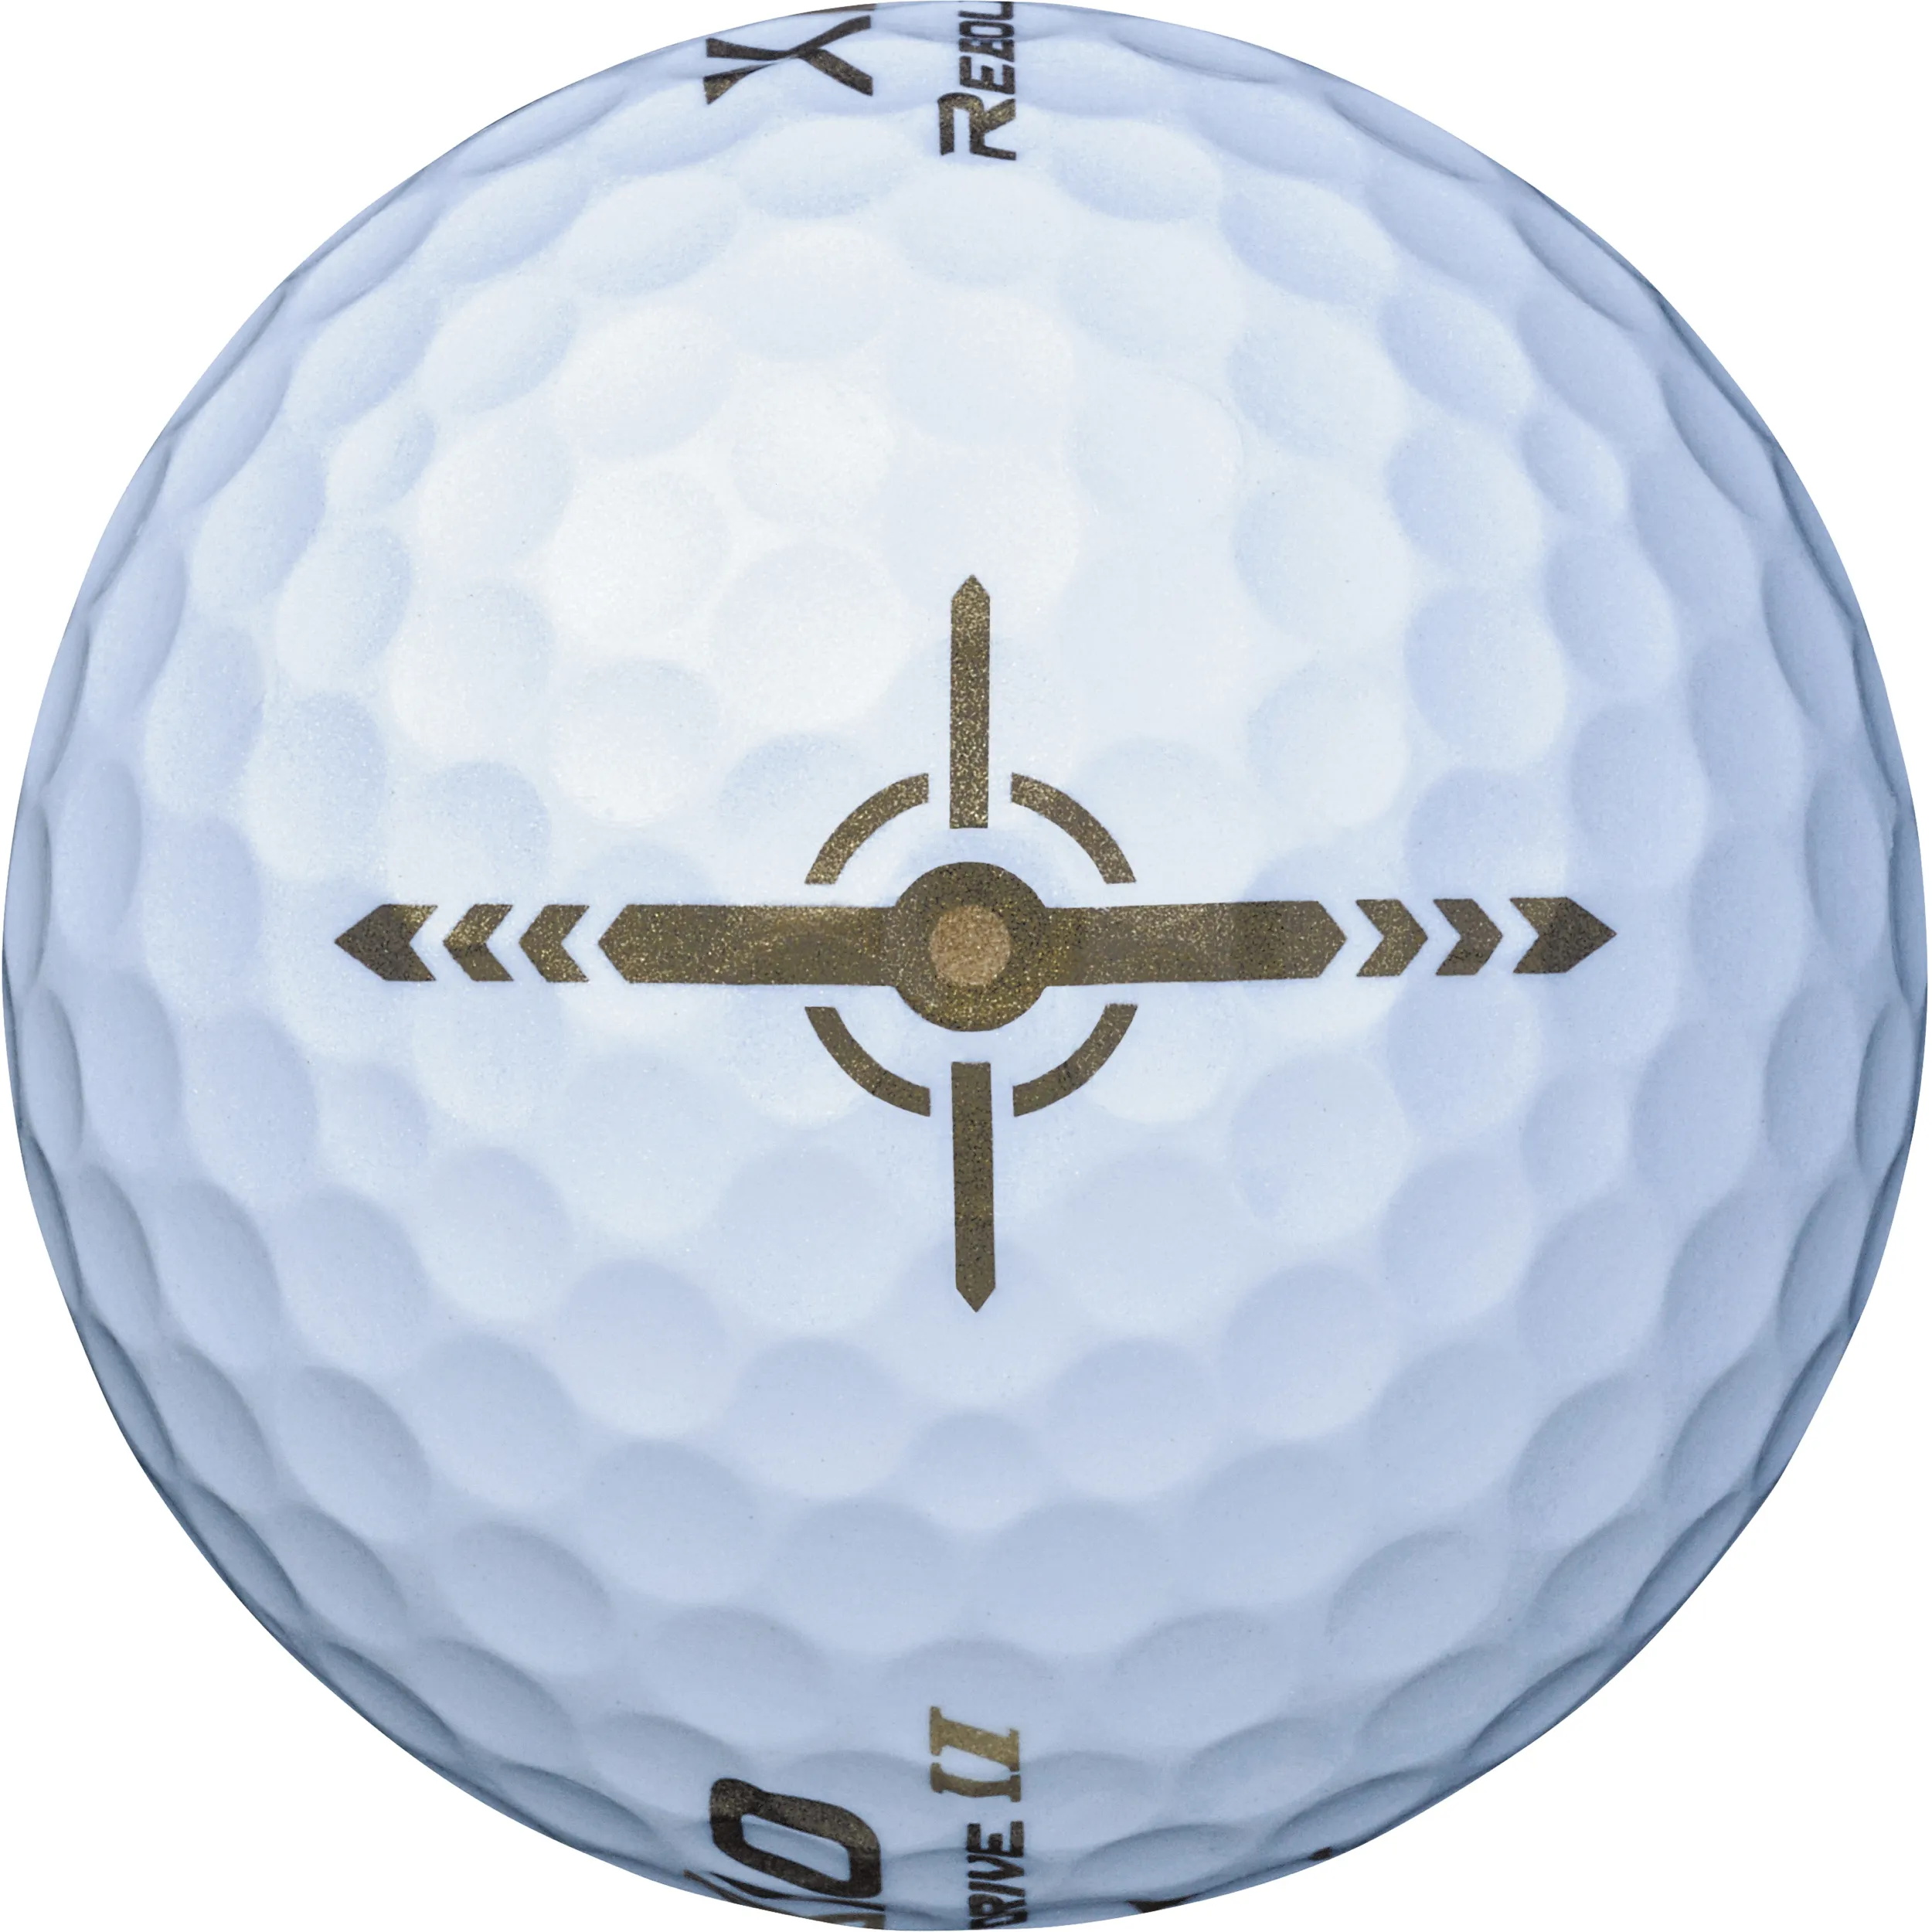 XXIO Rebound Drive II Golfbälle, weiß/hellbraun